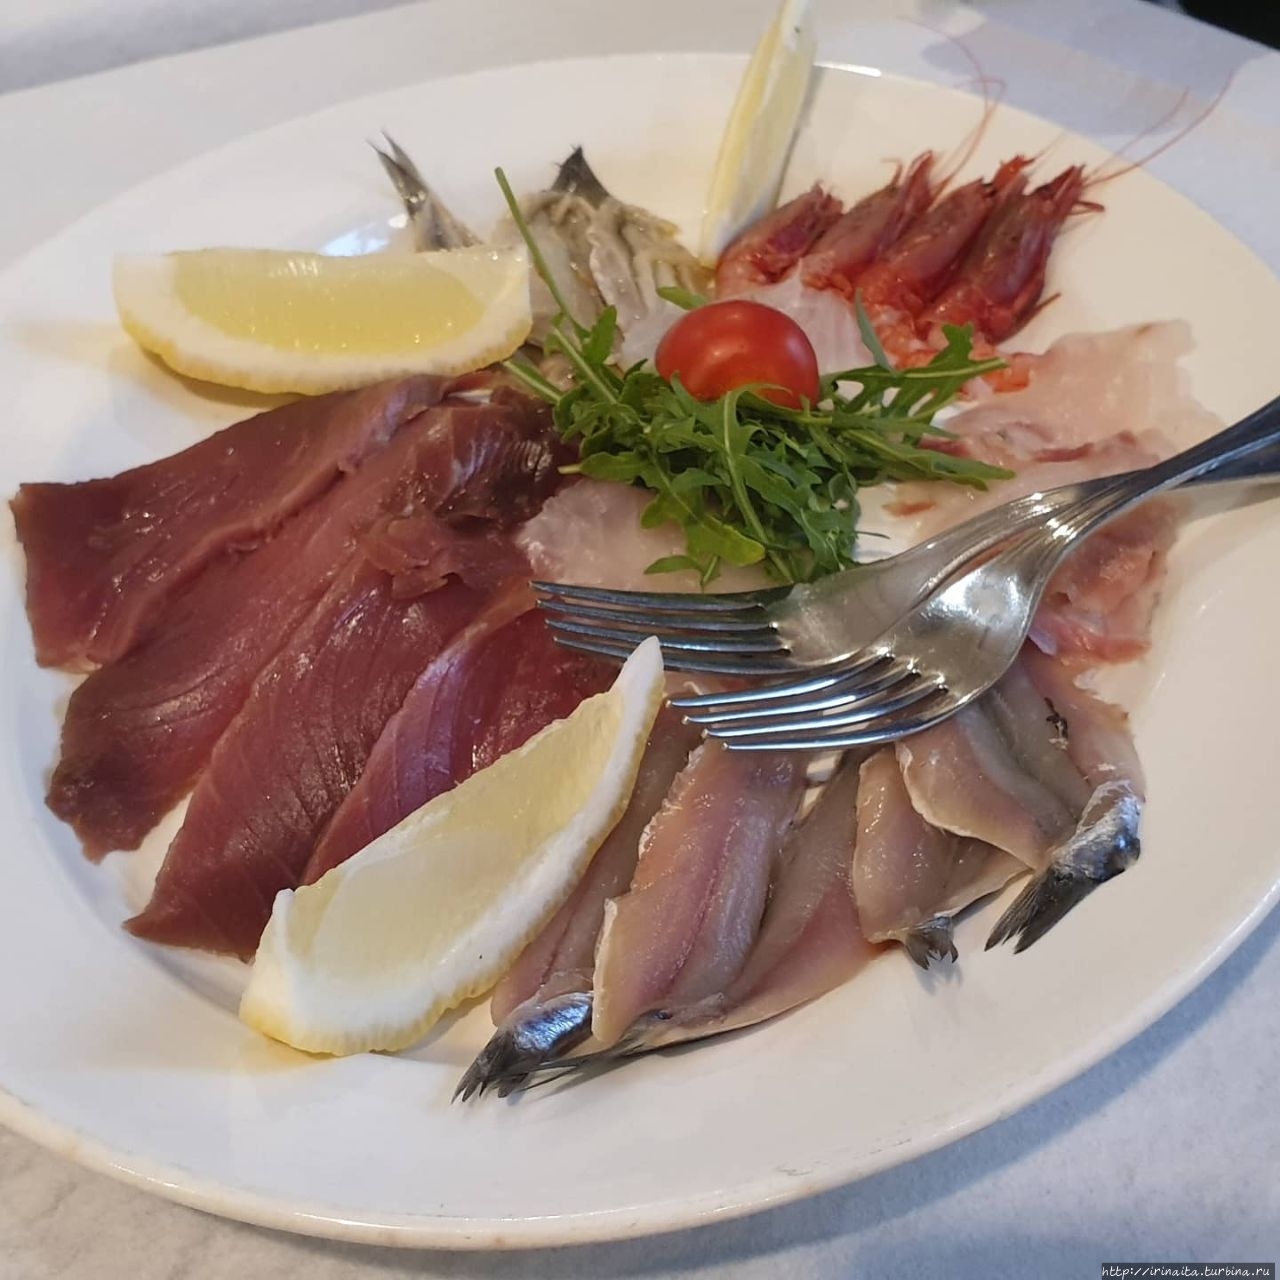 Рыбный ресторан Approdo 56 открылся в модном районе Пиньето Рим, Италия